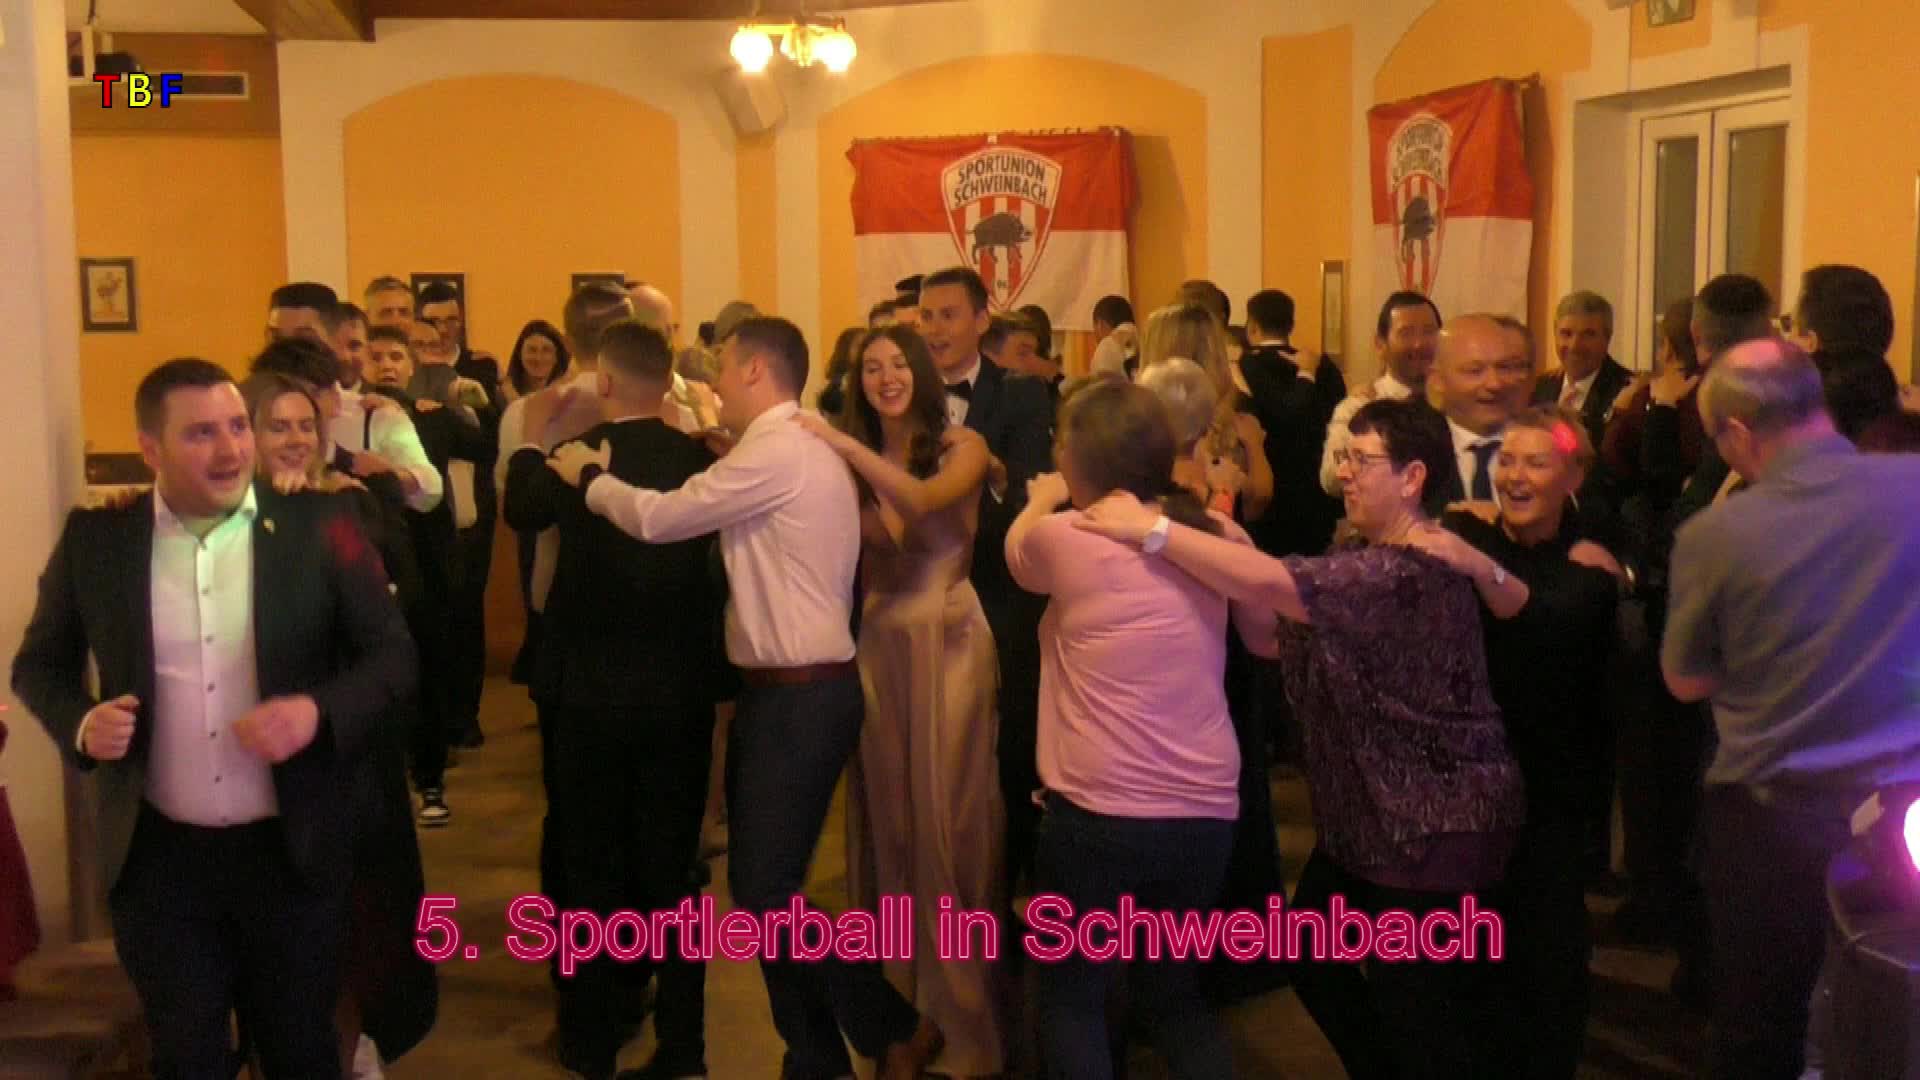 5. Sportlerball in Schweinbach